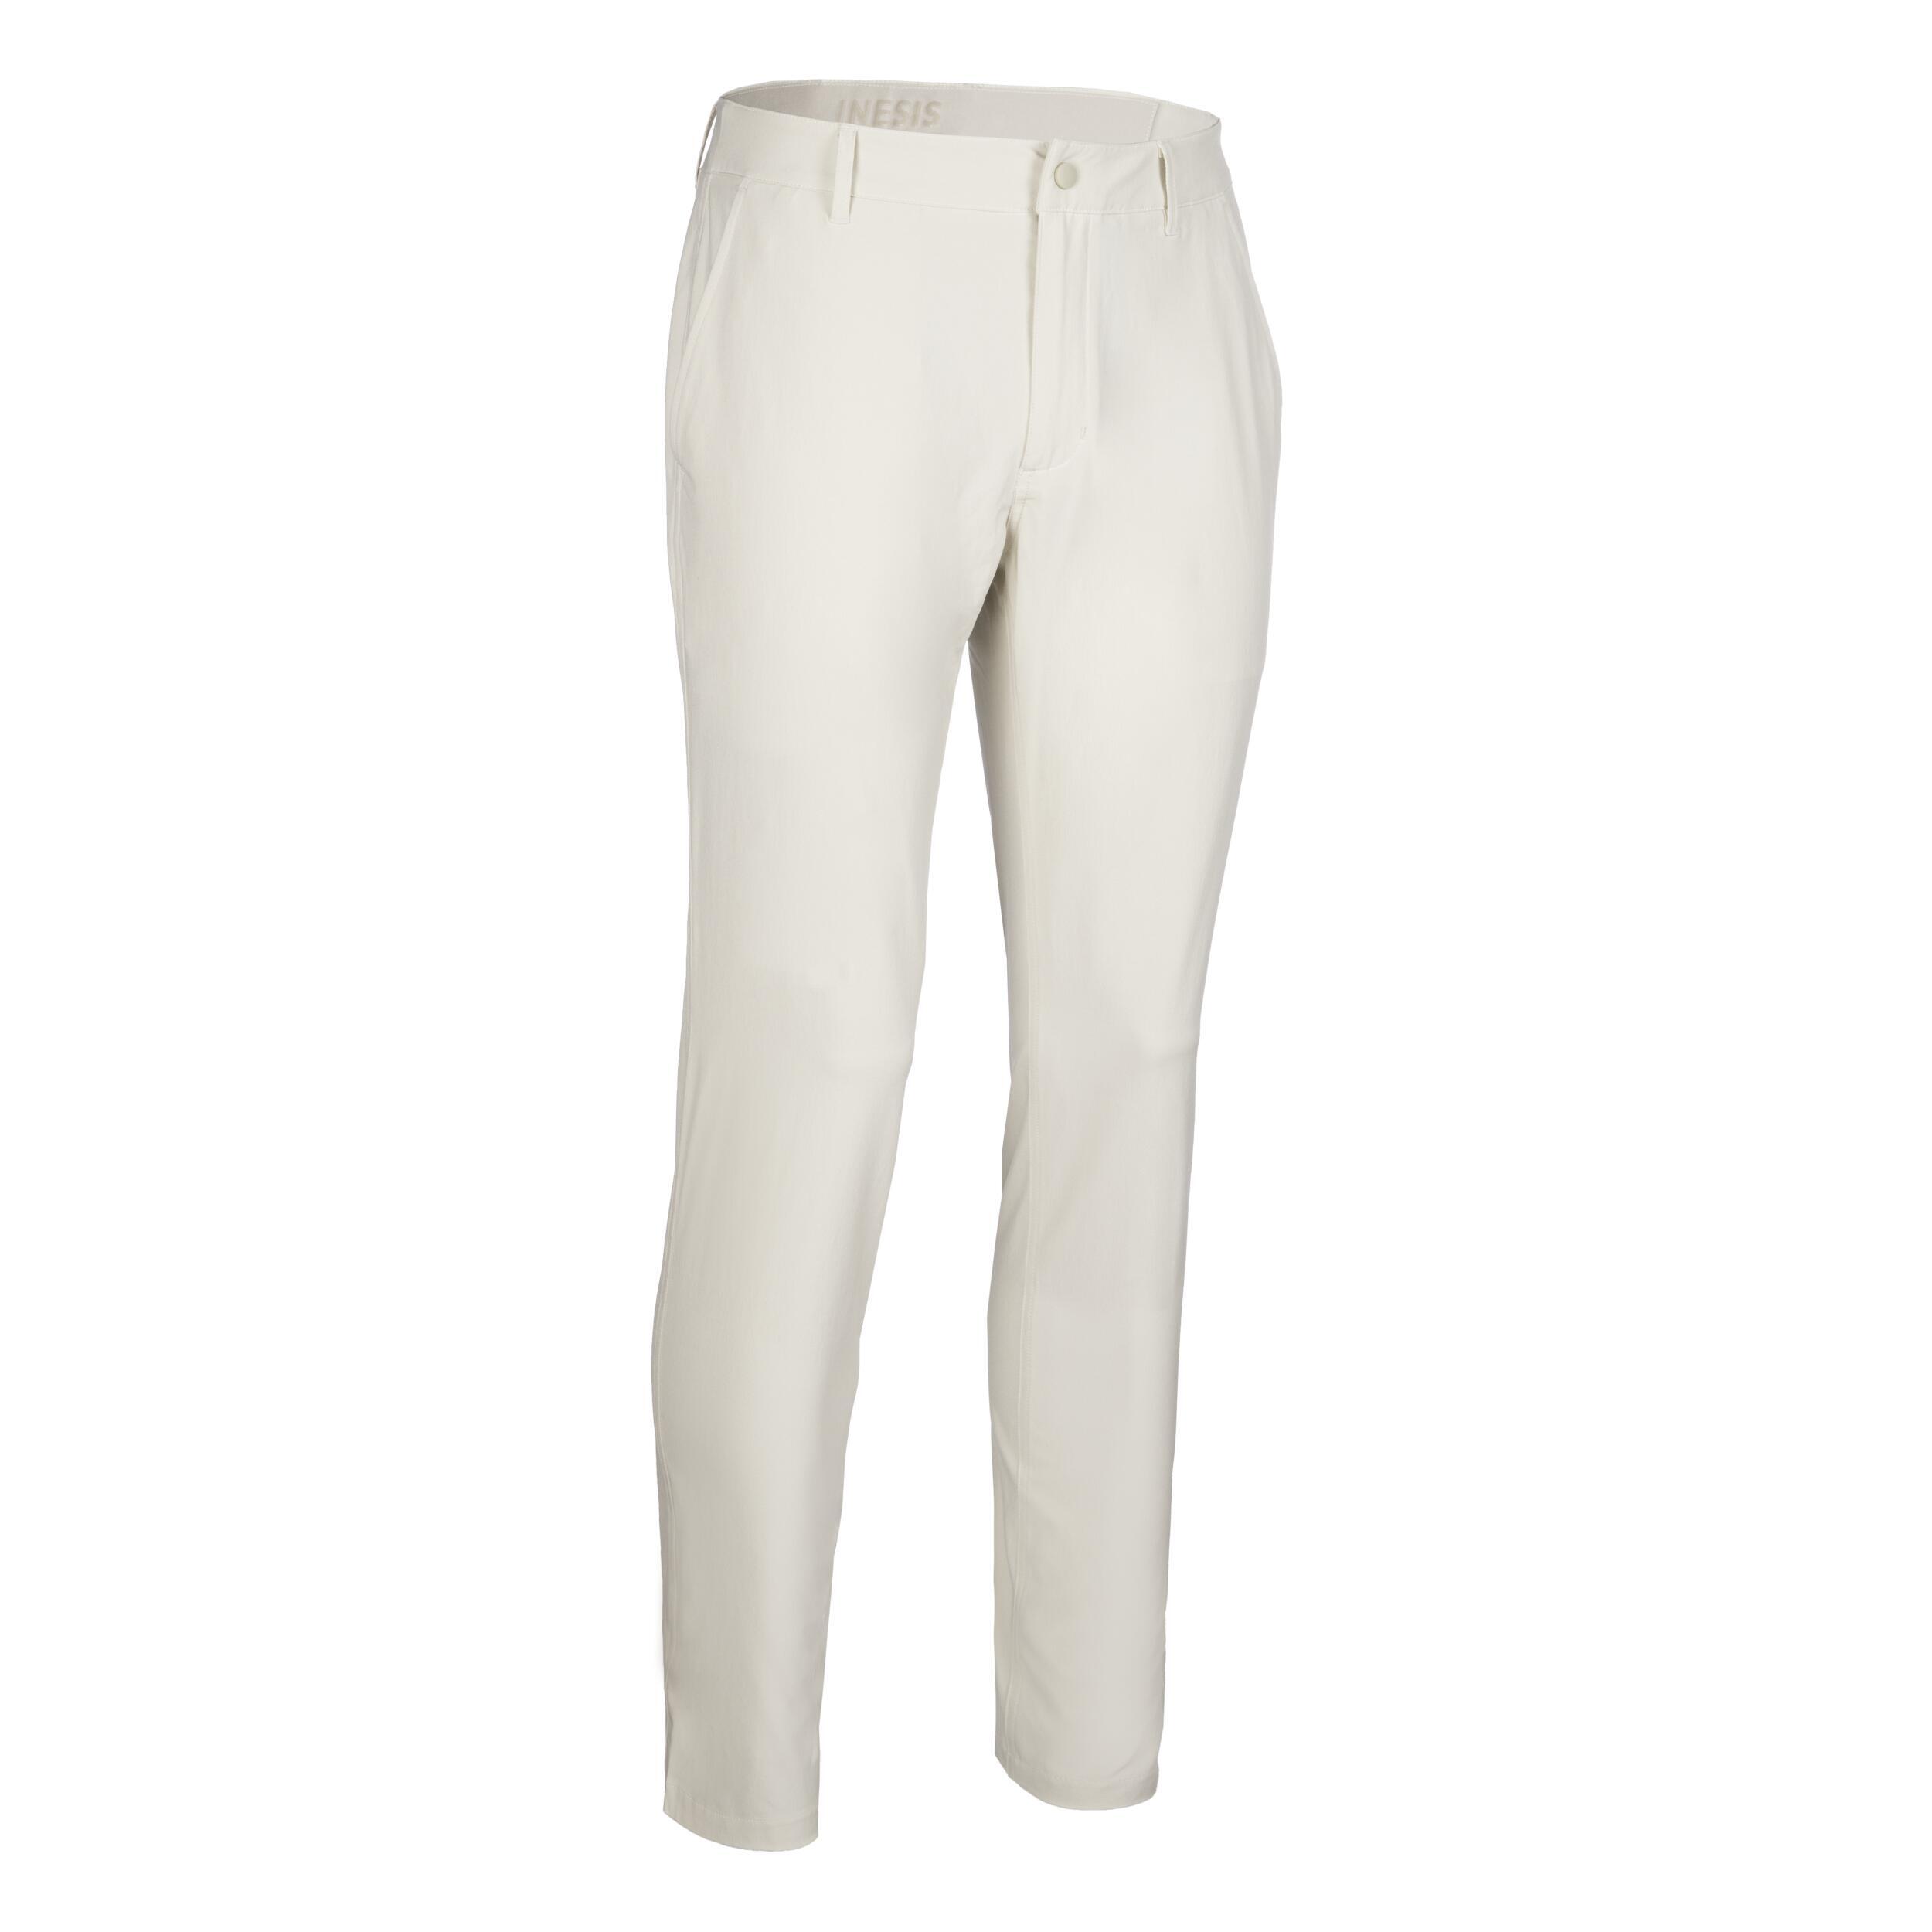 Men's golf trousers - WW 500 light beige 3/3